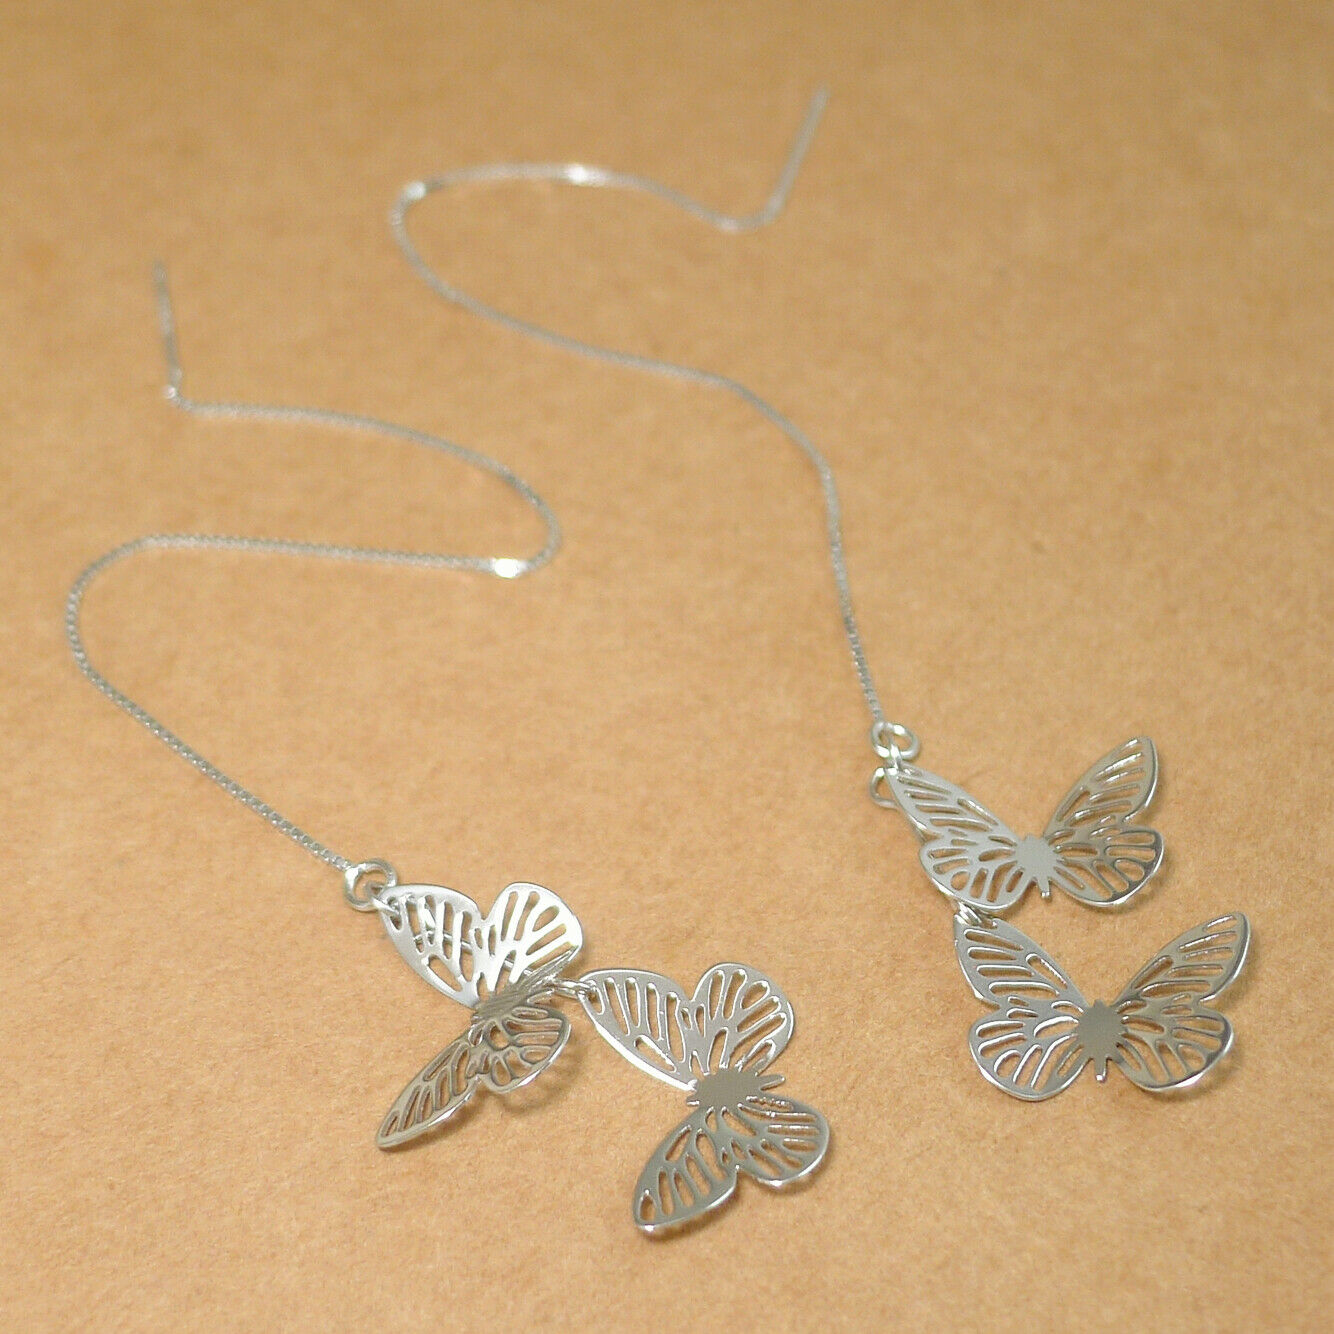 Sterling Silver Butterfly Threader Earrings - Lightweight Dangle Drop Pull Through Ear Jewelry - sugarkittenlondon